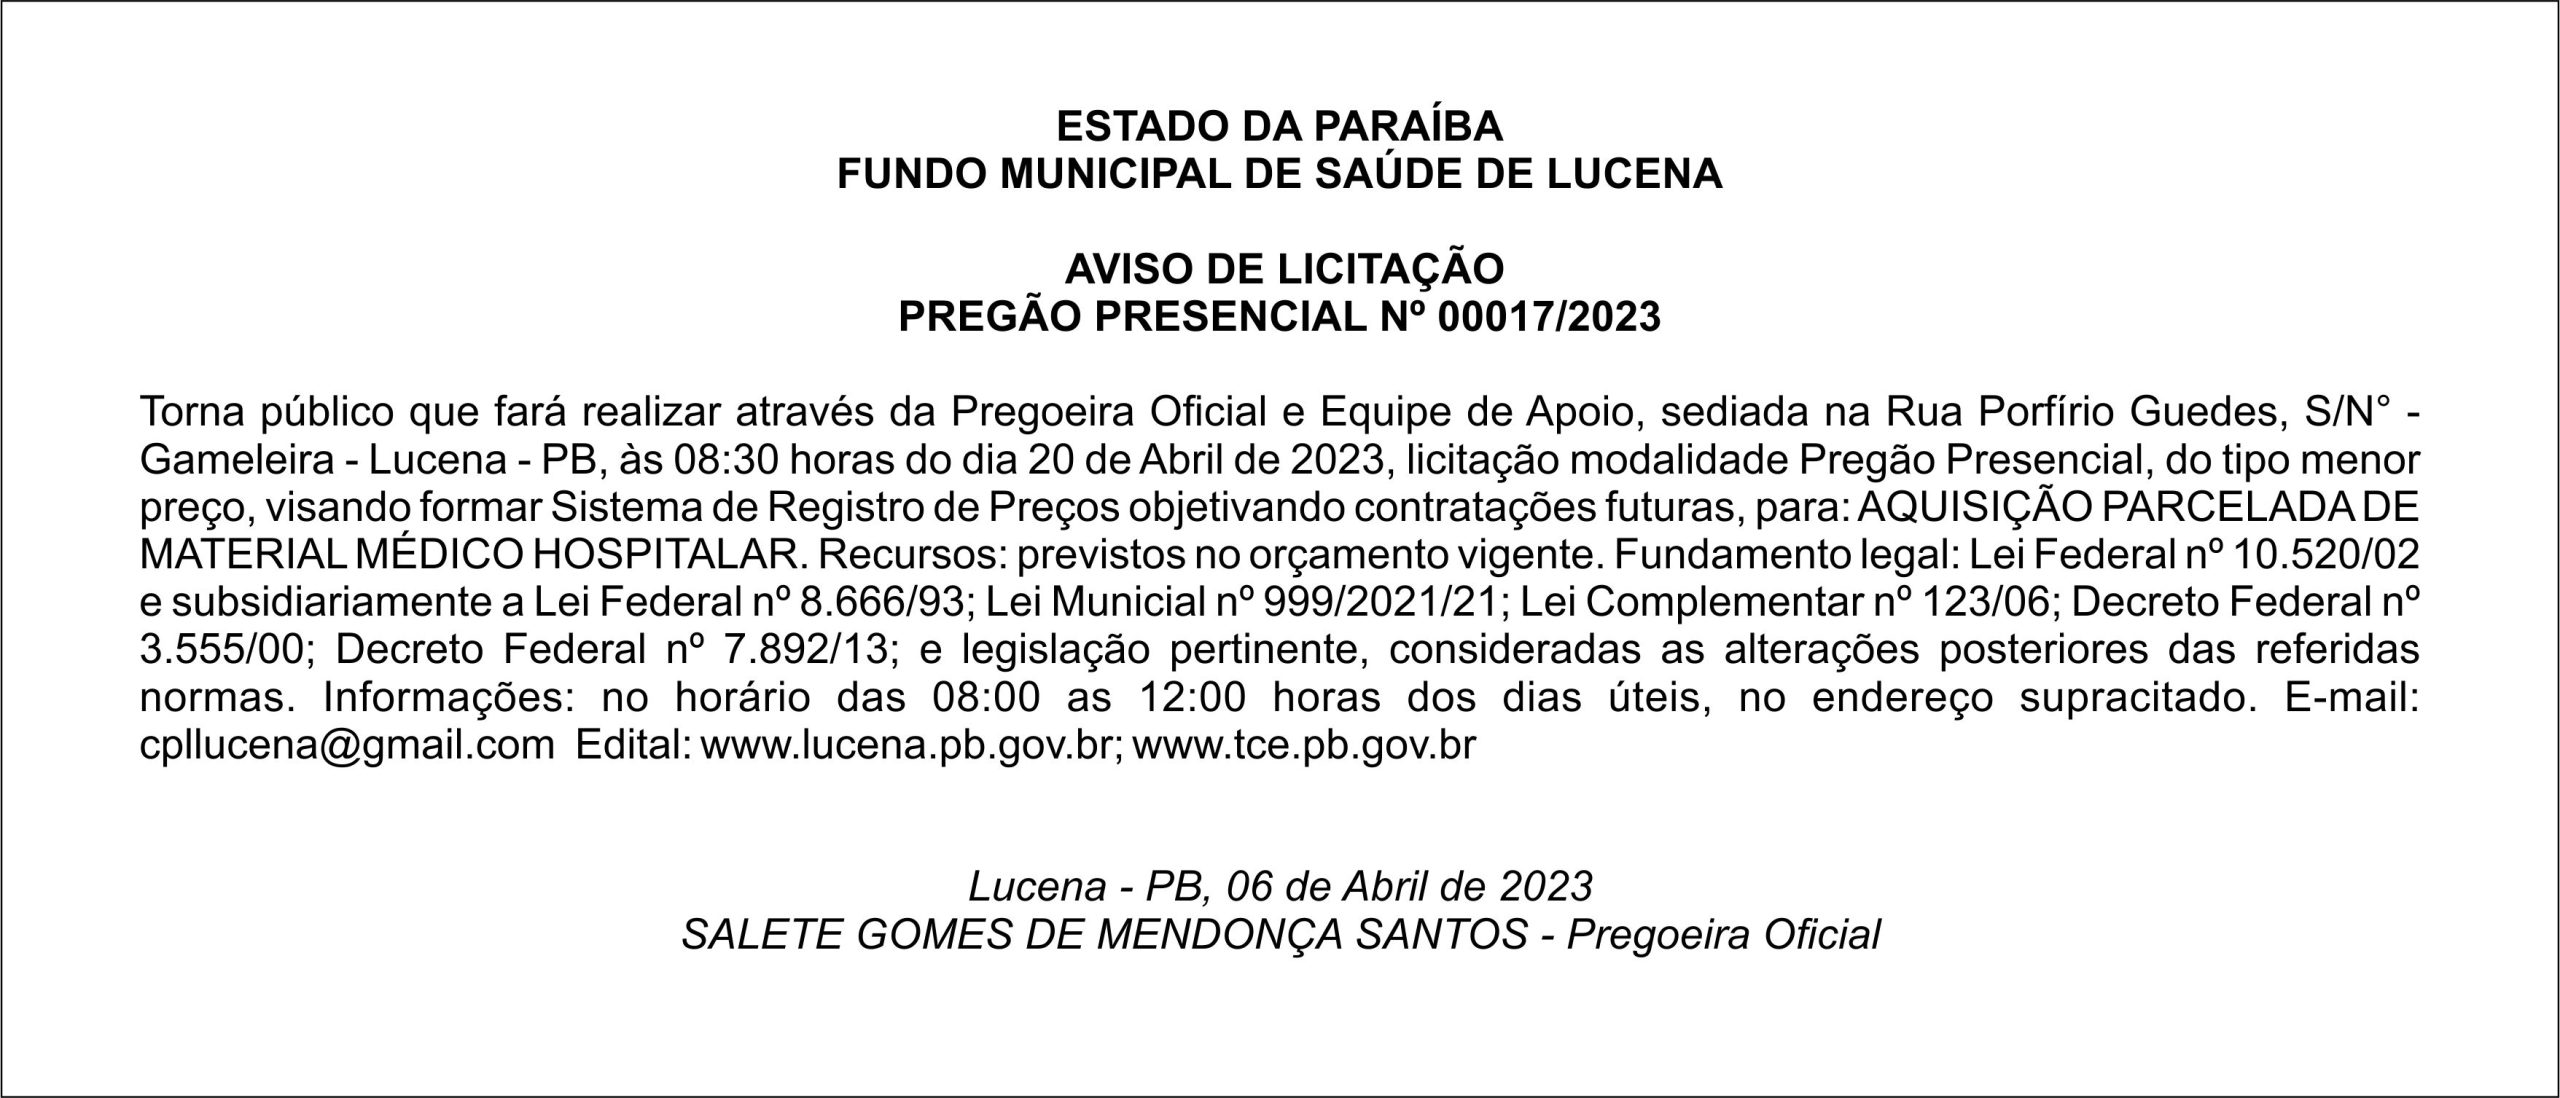 FUNDO MUNICIPAL DE SAÚDE DE LUCENA  – AVISO DE LICITAÇÃO – PREGÃO PRESENCIAL Nº 00017/2023